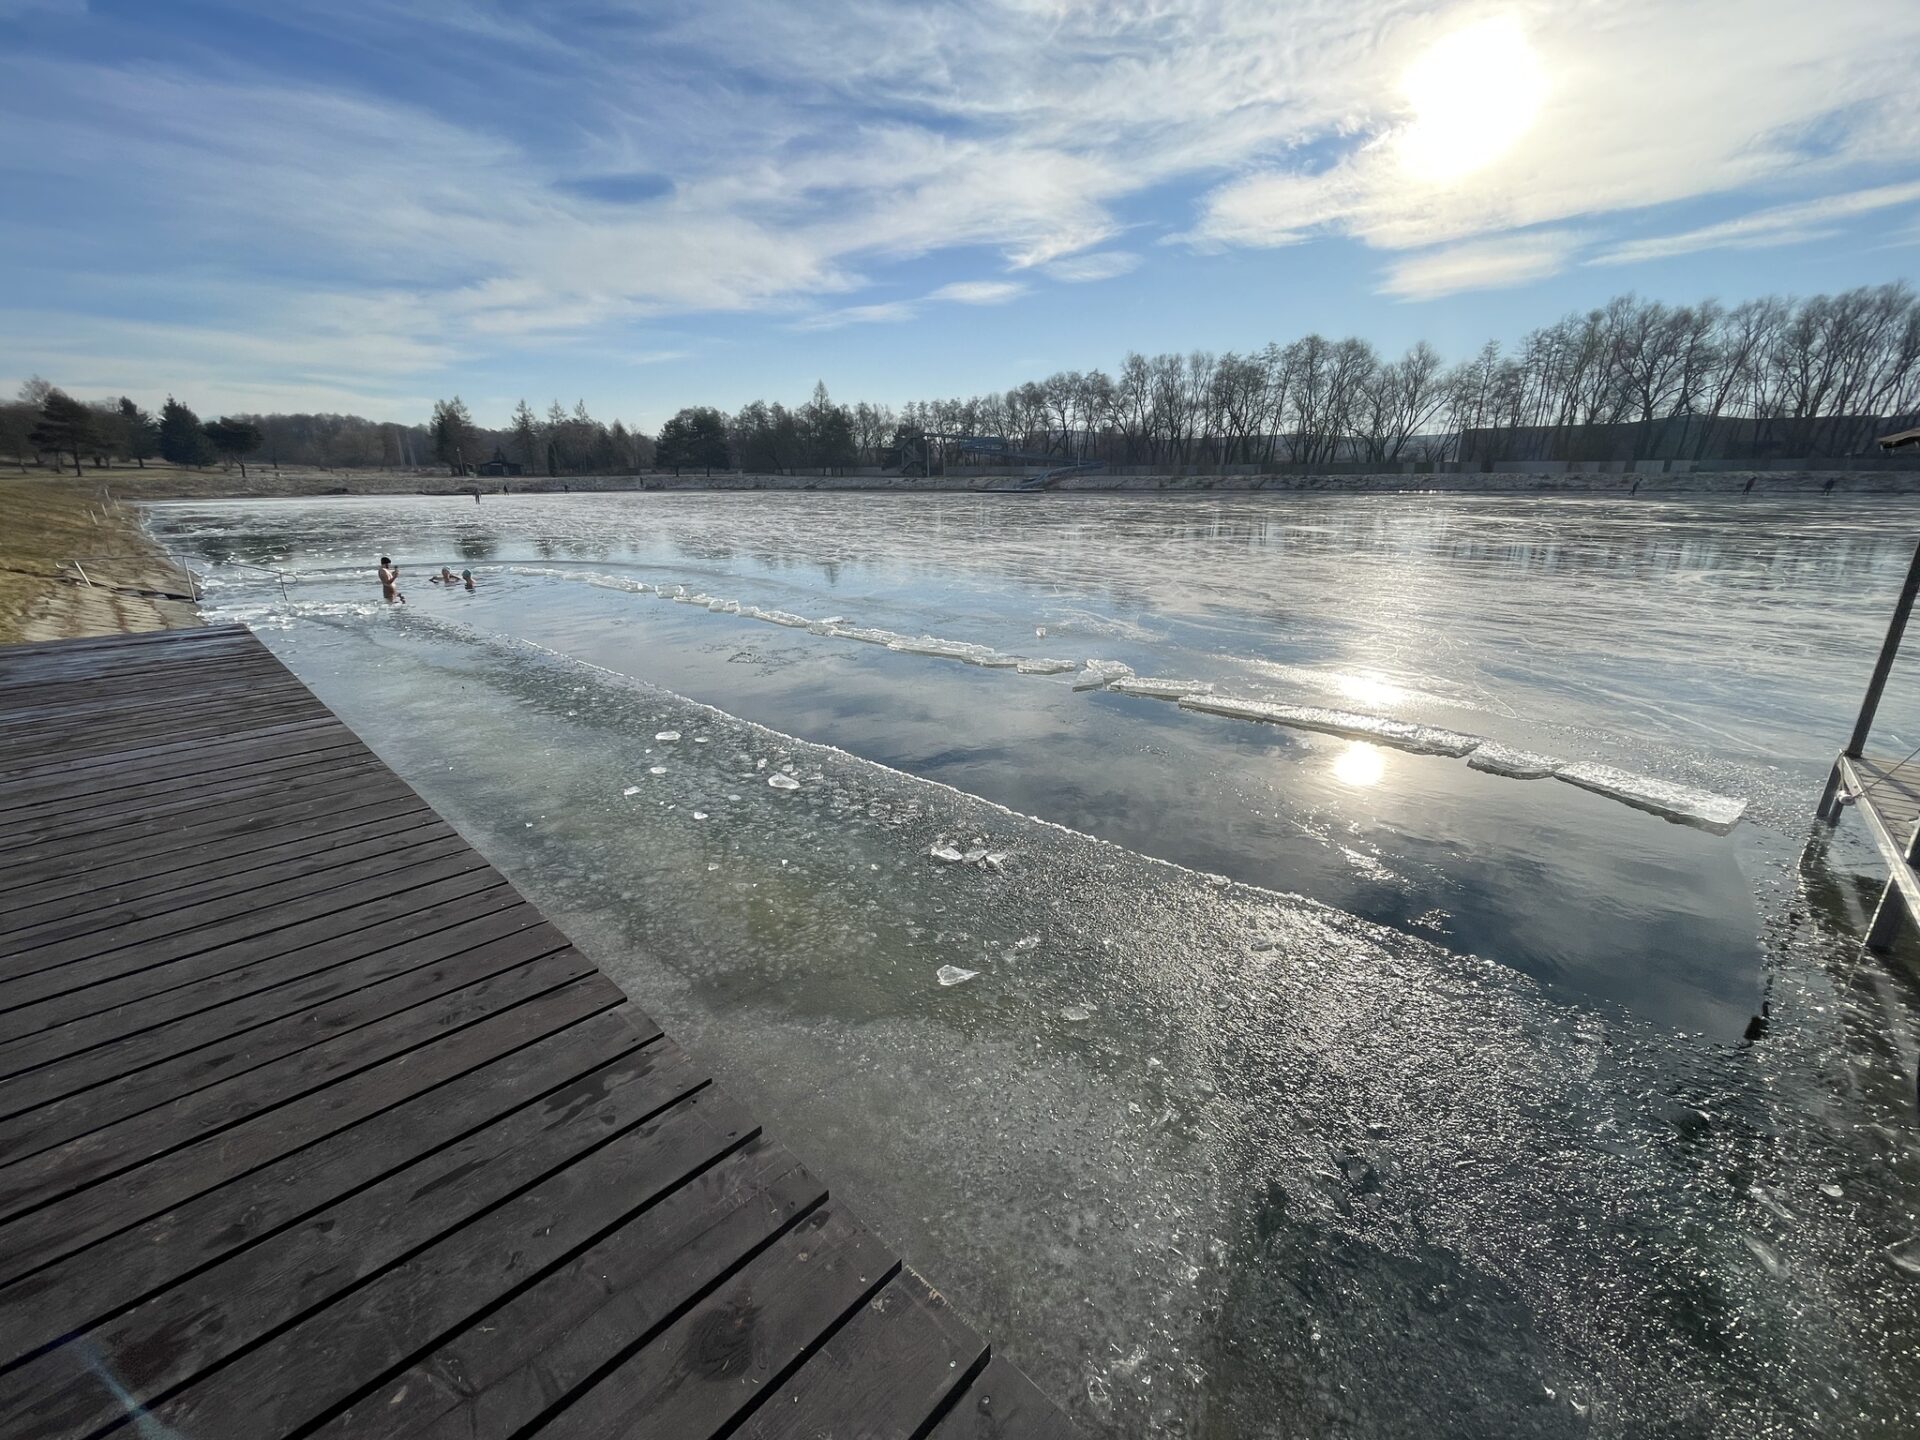 Bezplatné korčuľovanie a otužovanie v Prešove. Areál Delňa je otvorený každý deň